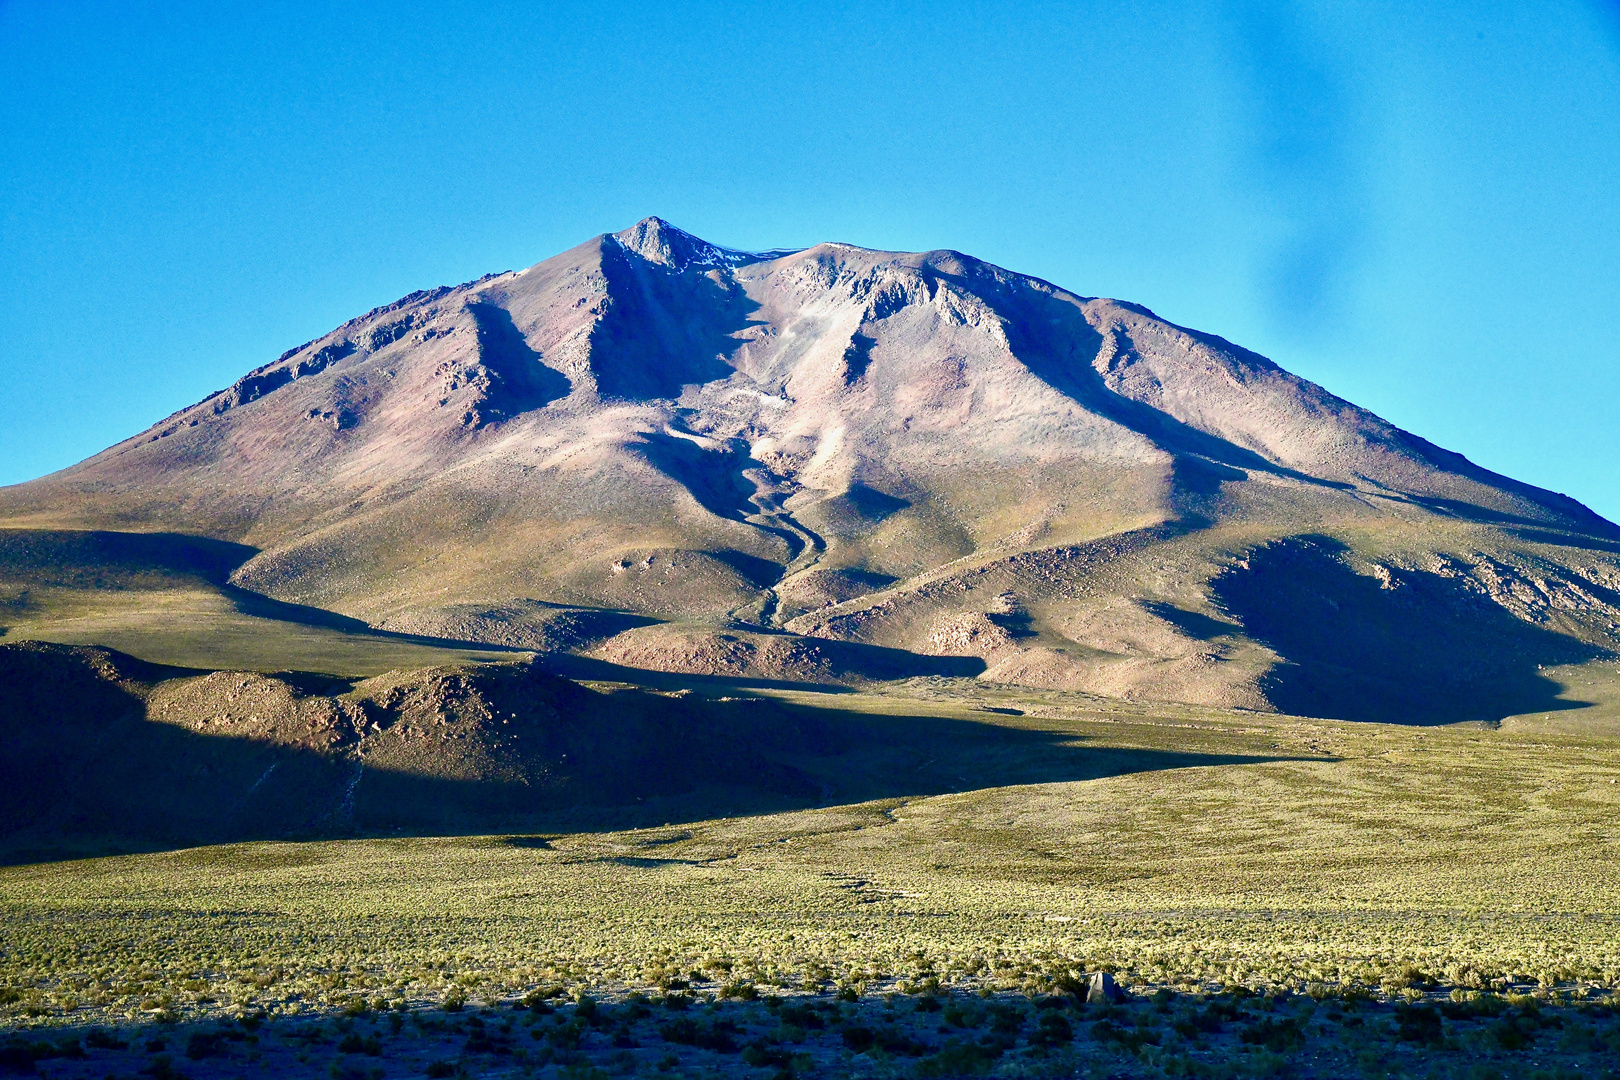 Desierto de Siloli (Bolivien) kurz nach der Regenzeit